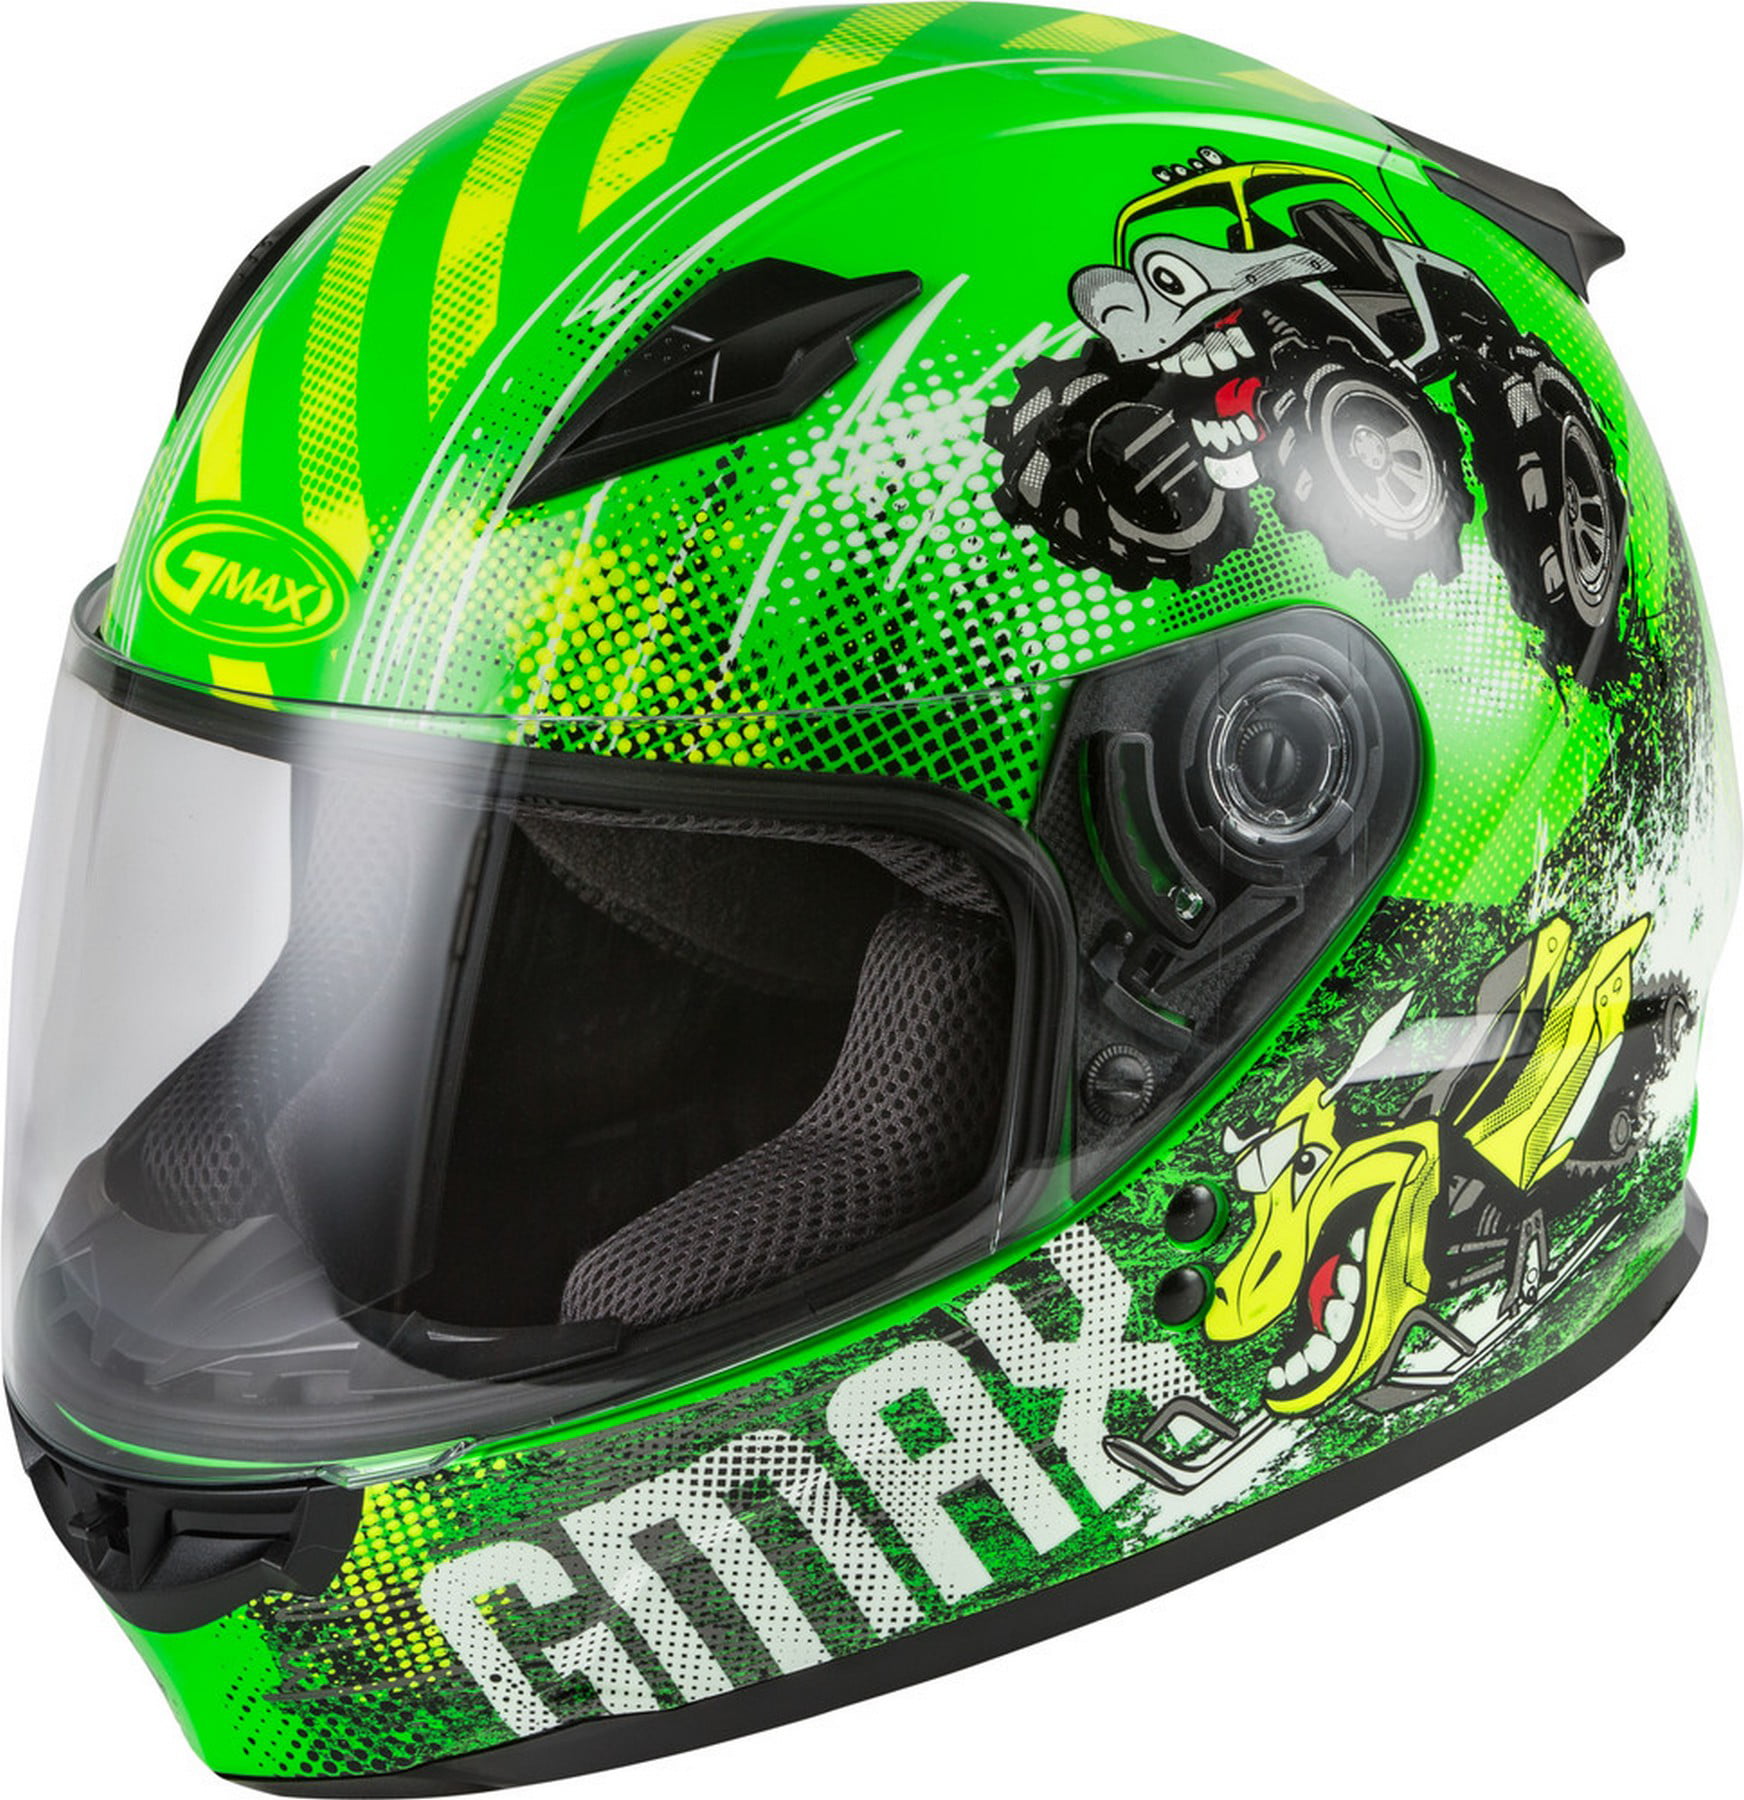 GMAX GM-49Y Beasts Youth Motorcycle Helmet Hi Vis Neon Green SM